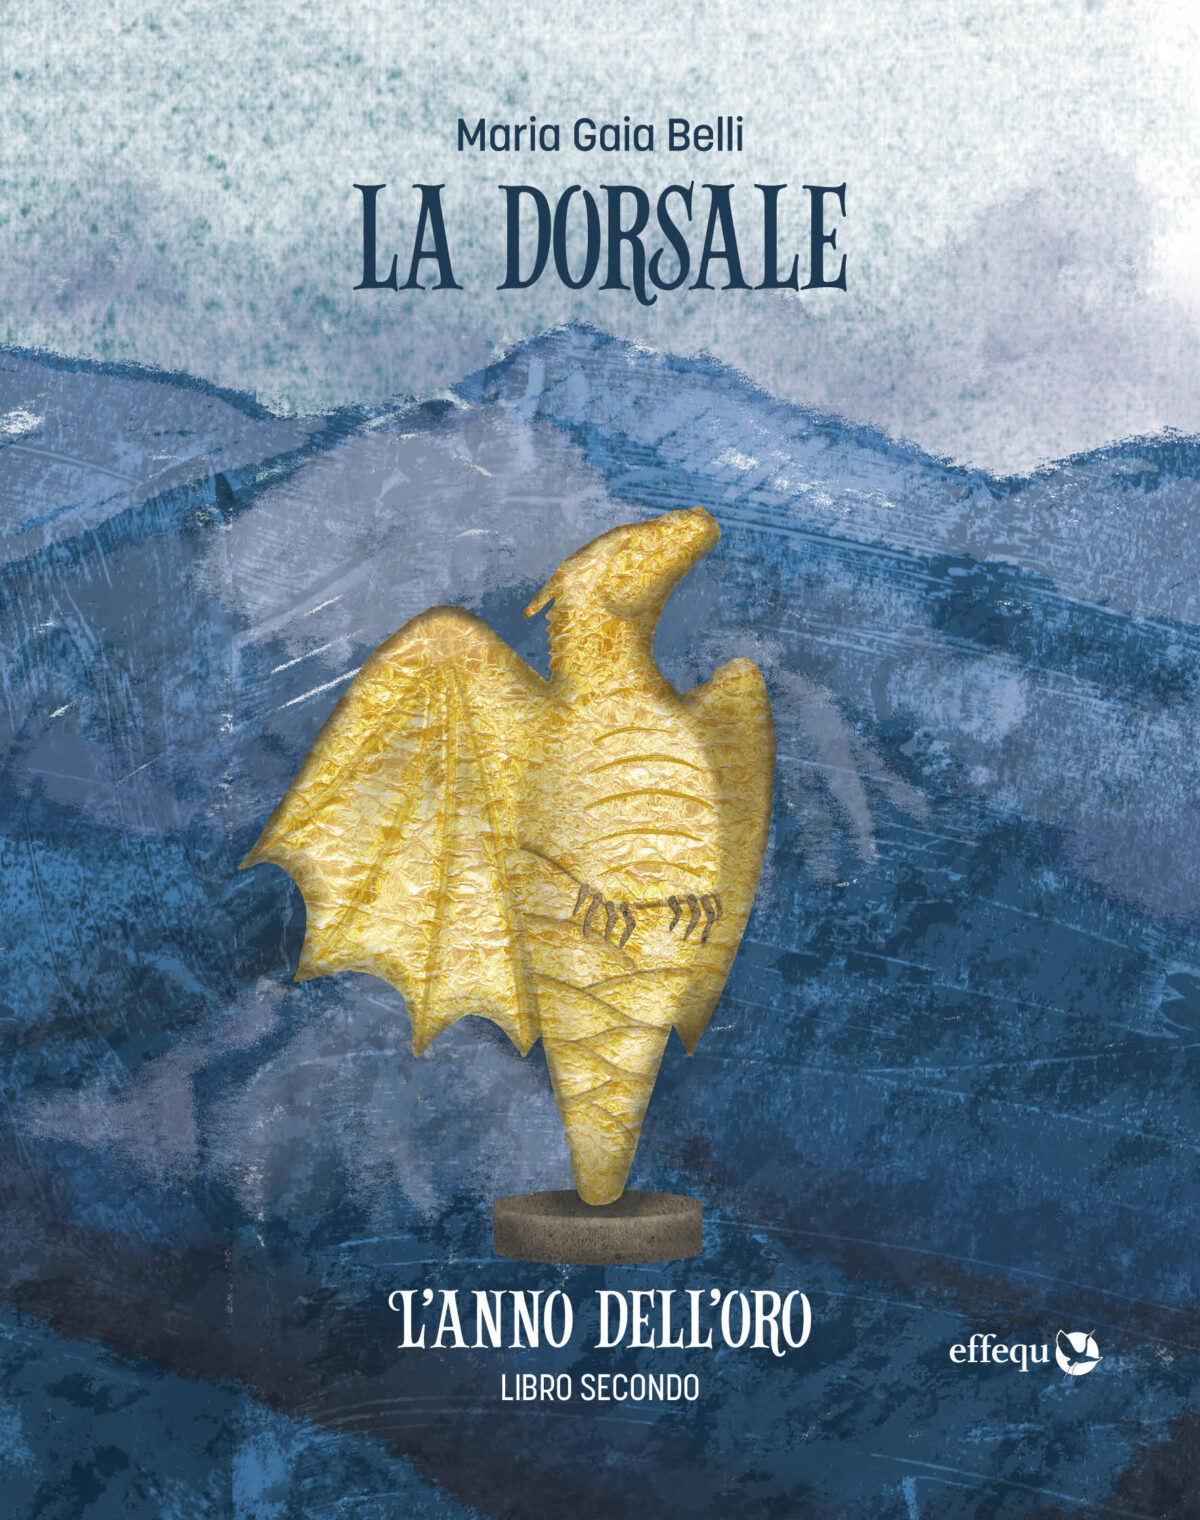 L'anno dell'oro (Paperback, Italiano language, Effequ)